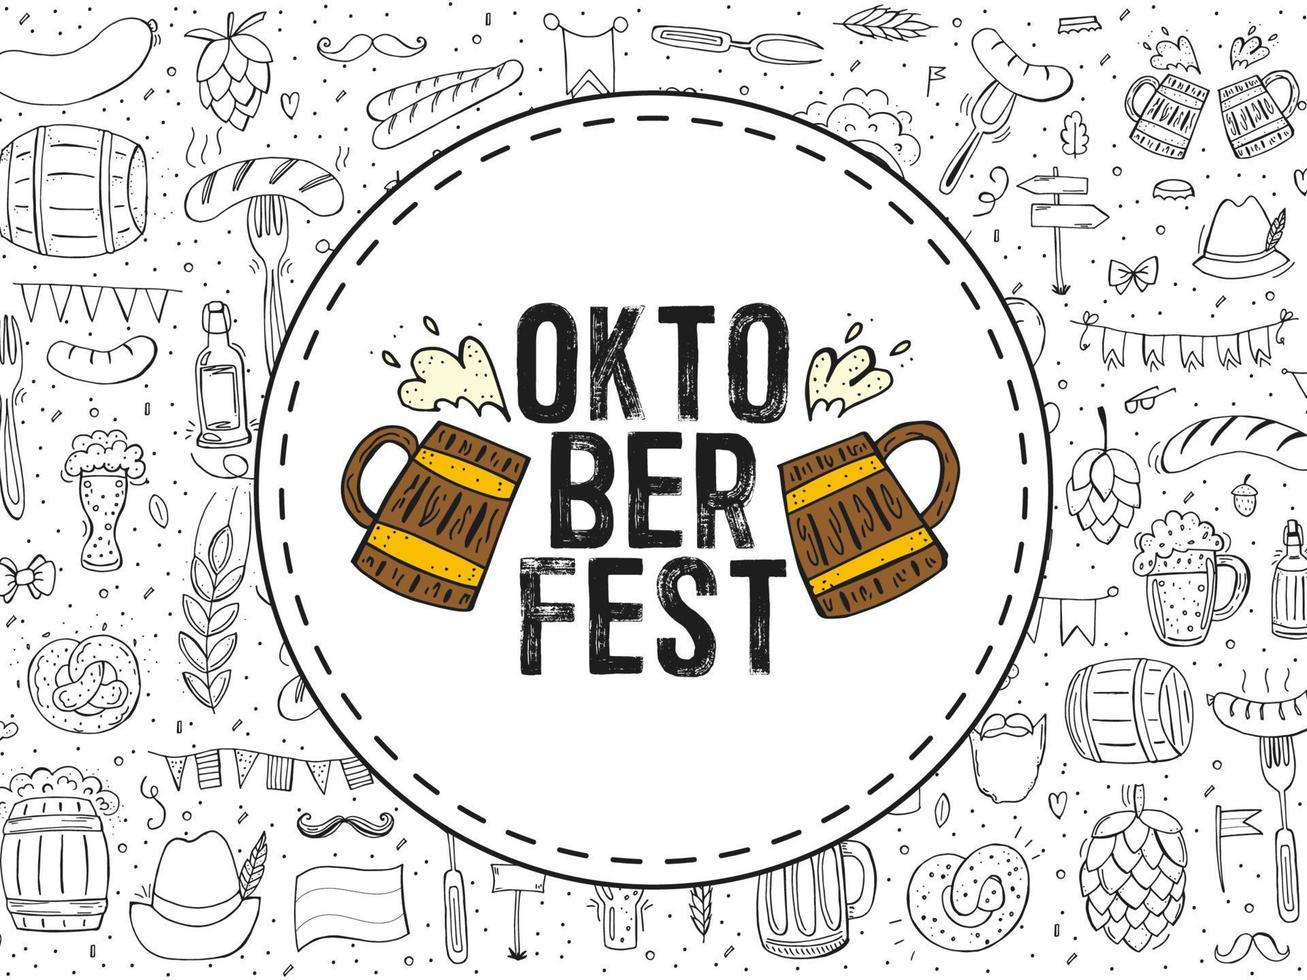 oktoberfest 2022 - bierfestival. handgetekende doodle elementen. Duitse traditionele vakantie. rond embleem met bierpullen en tekst met een patroon van overzichtselementen. vector